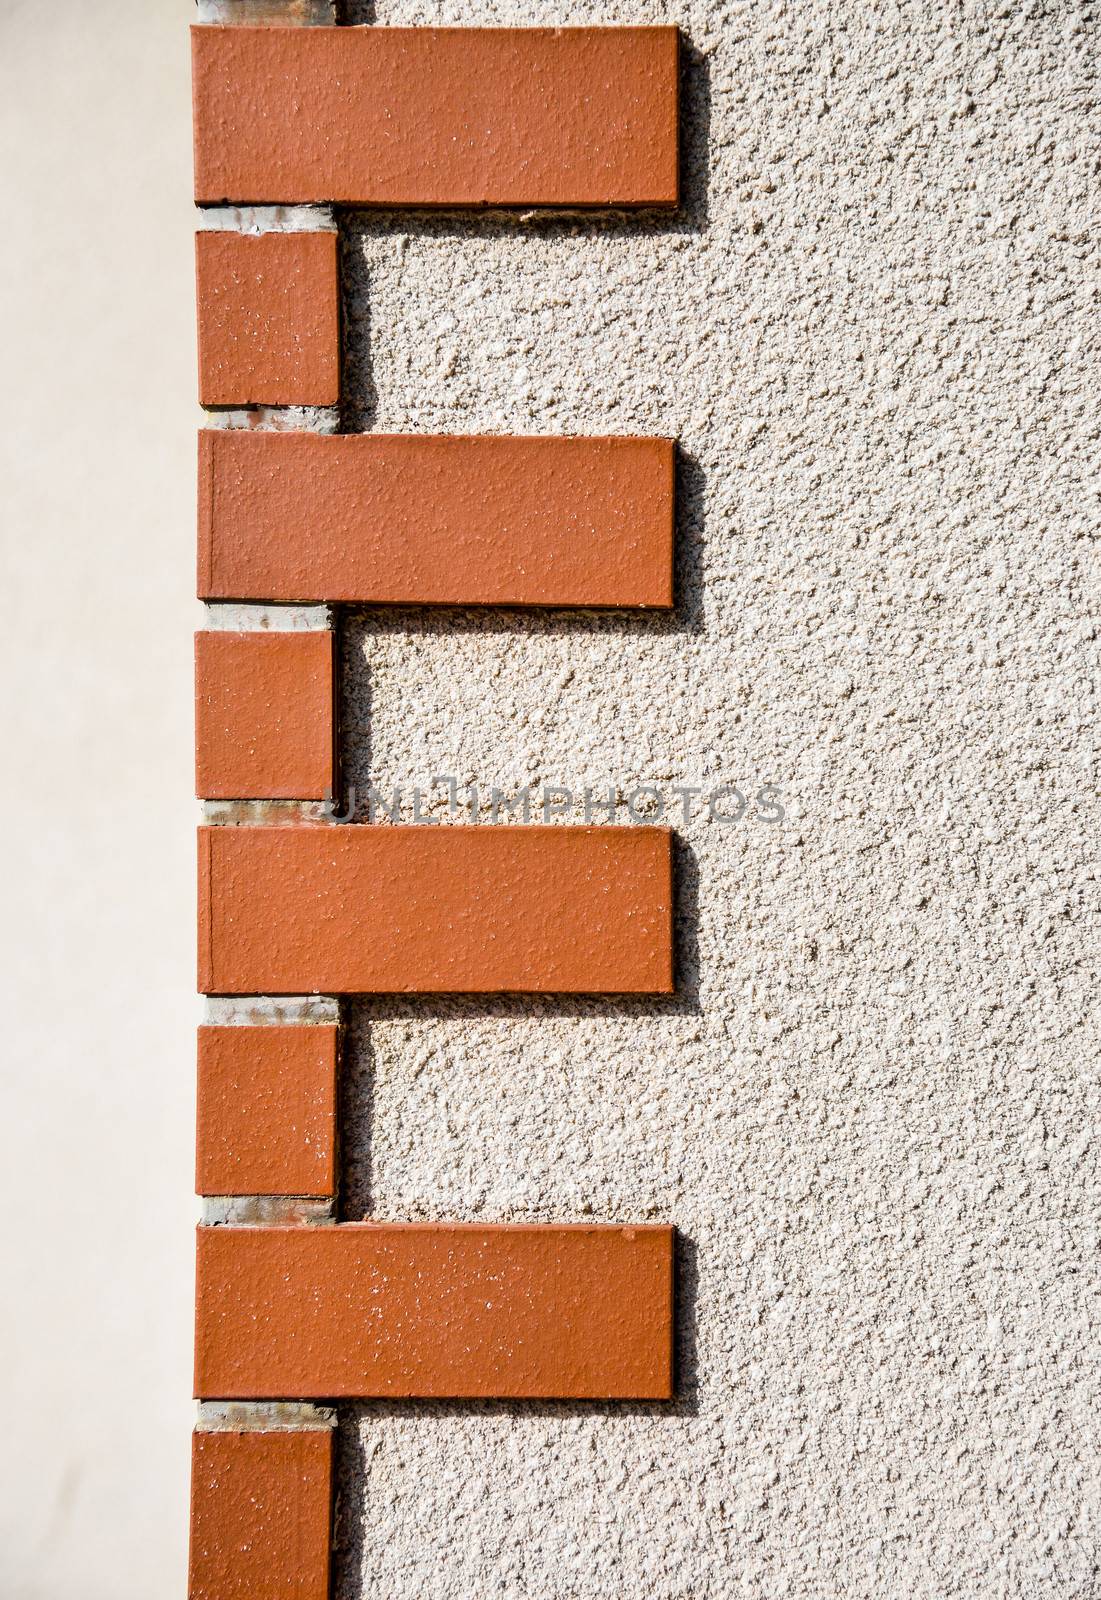 Brick corner pattern by gjeerawut